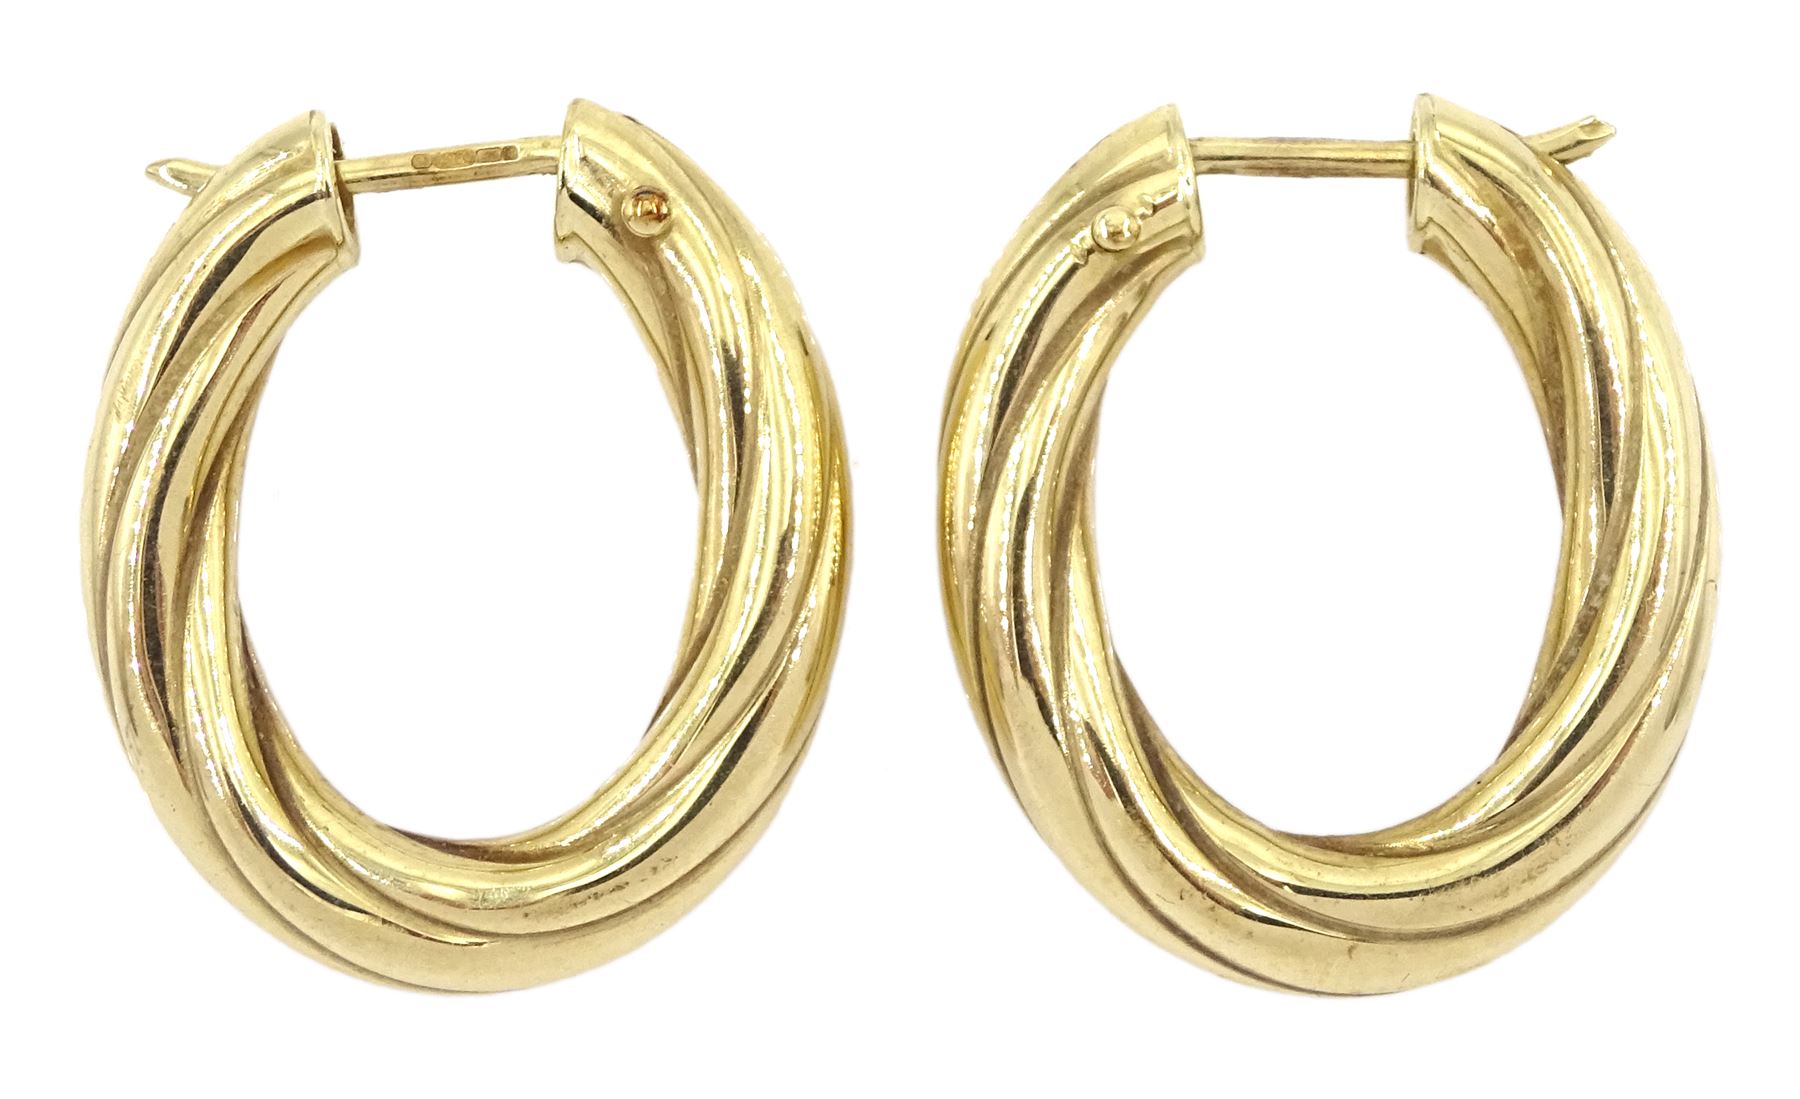 Pair of 9ct gold twisted hoop earrings